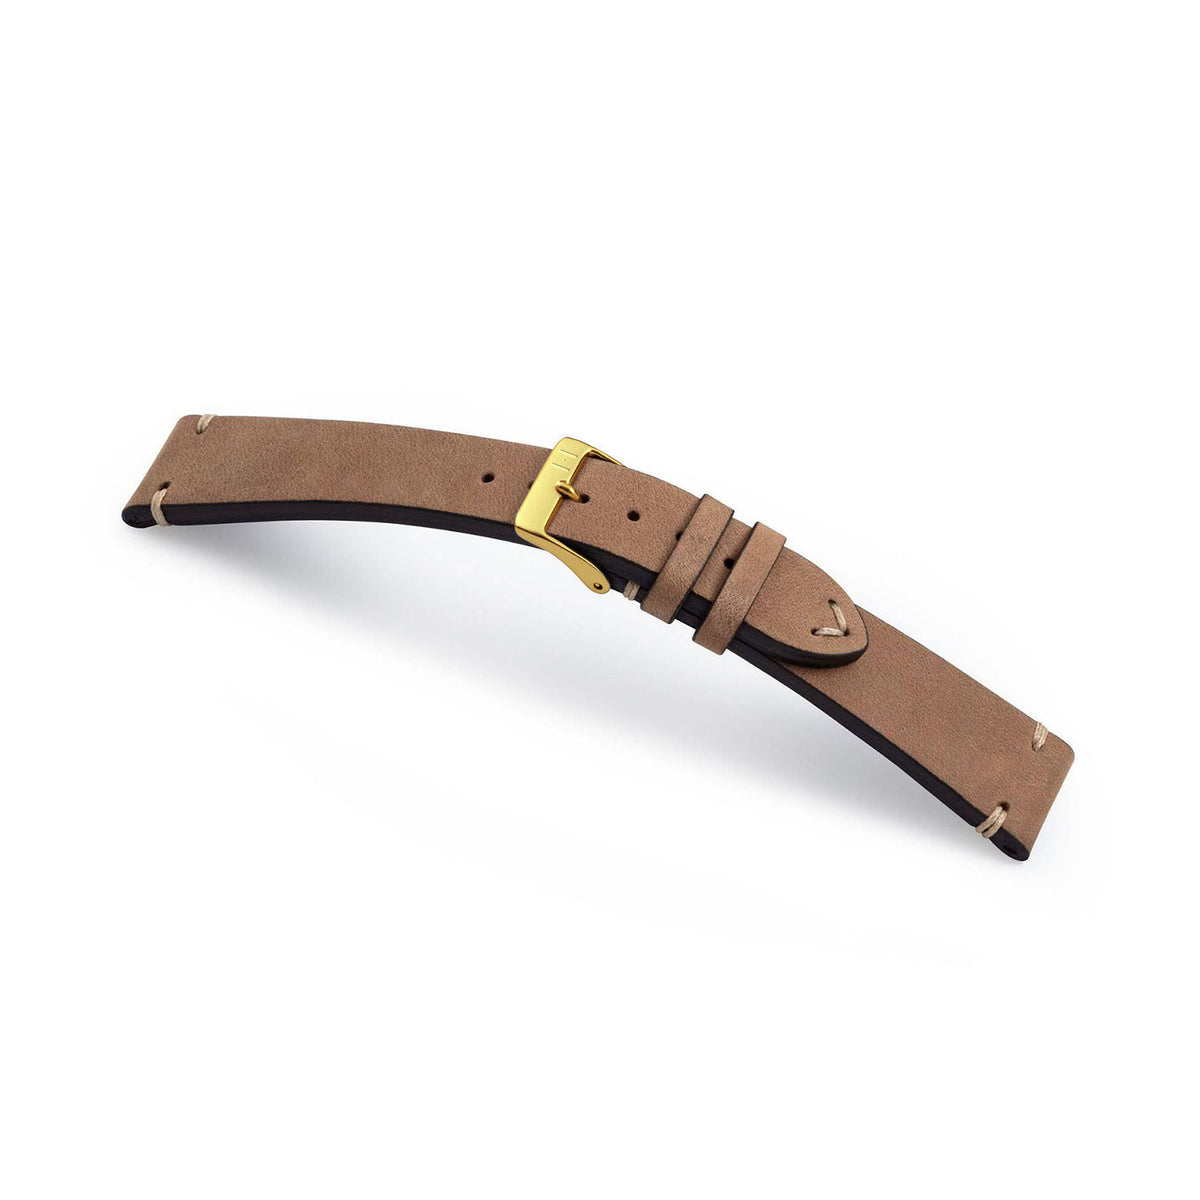 Watch strap &quot;UHLENHORST&quot; (vegetable vintage leather) - golden clasp